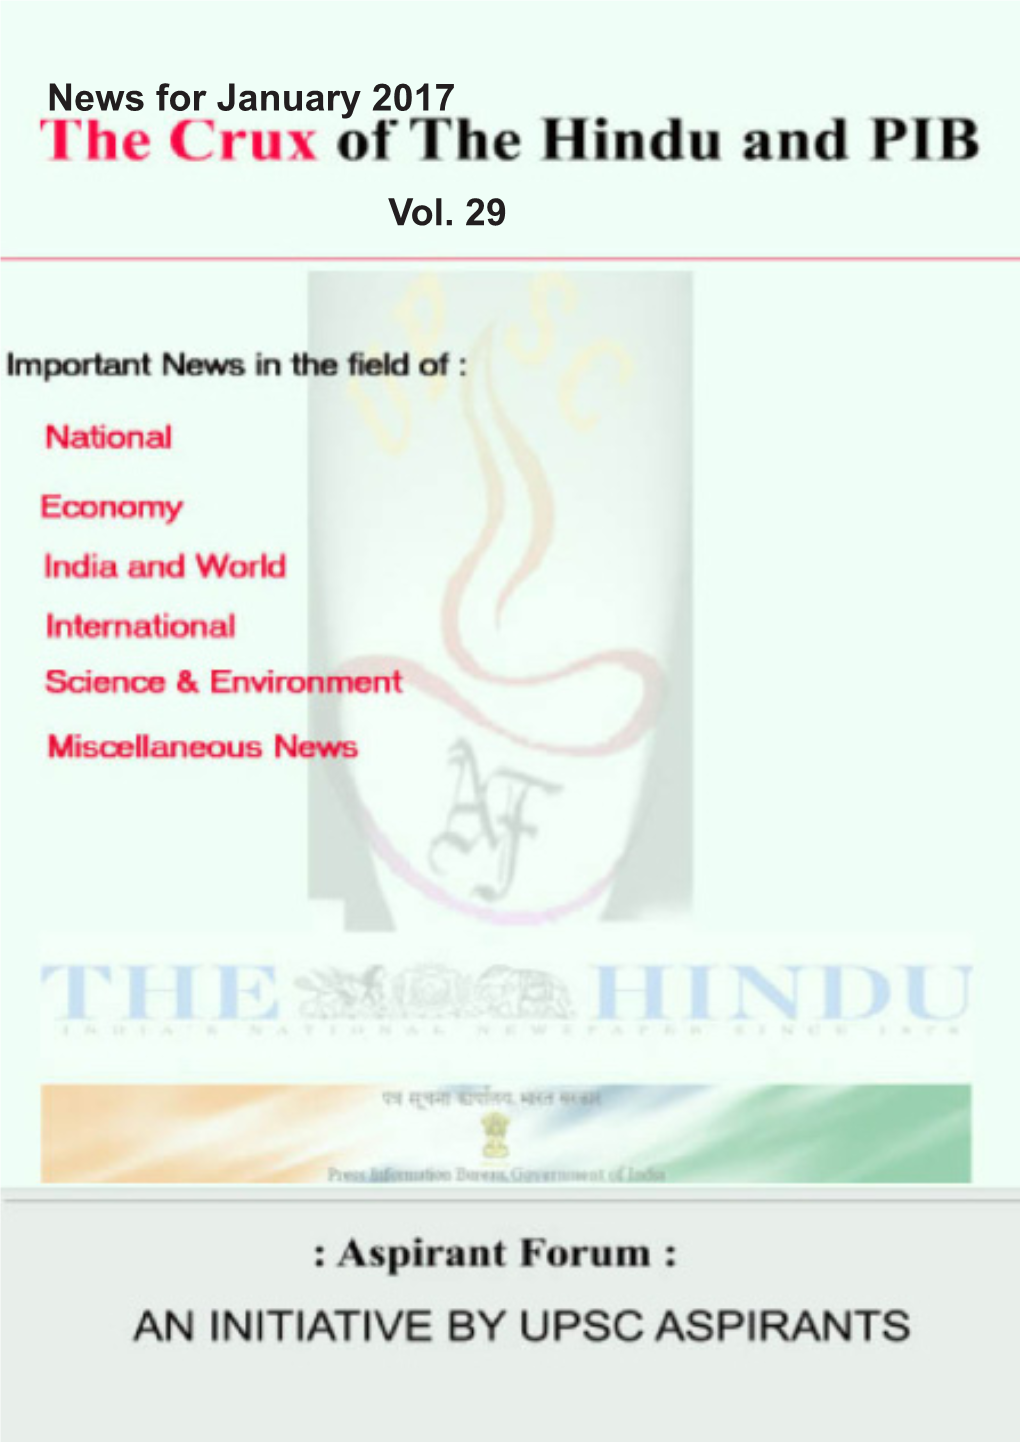 Aspirantforum.Com Hindu and PIB Crux Vol